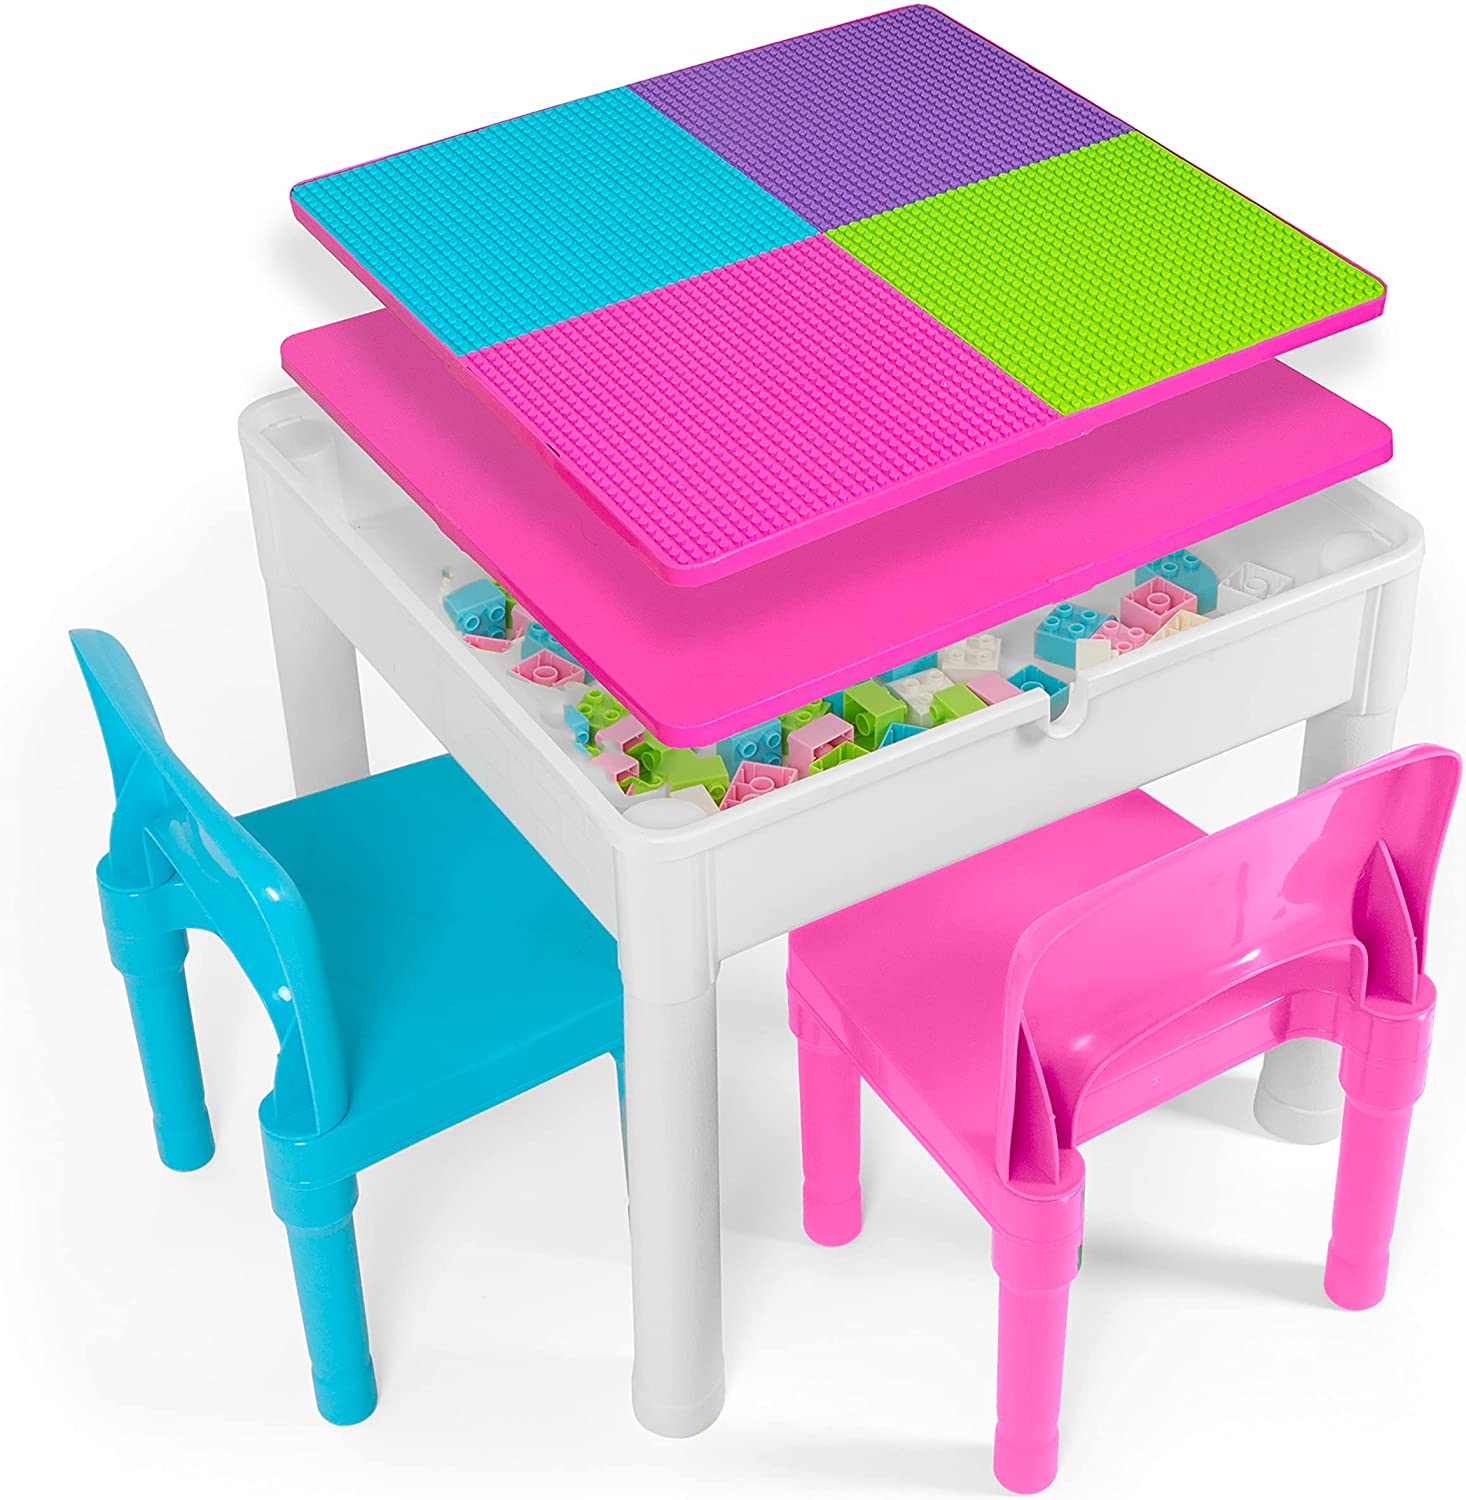 Play Platoon Playtime Easy Store Children’s Desk